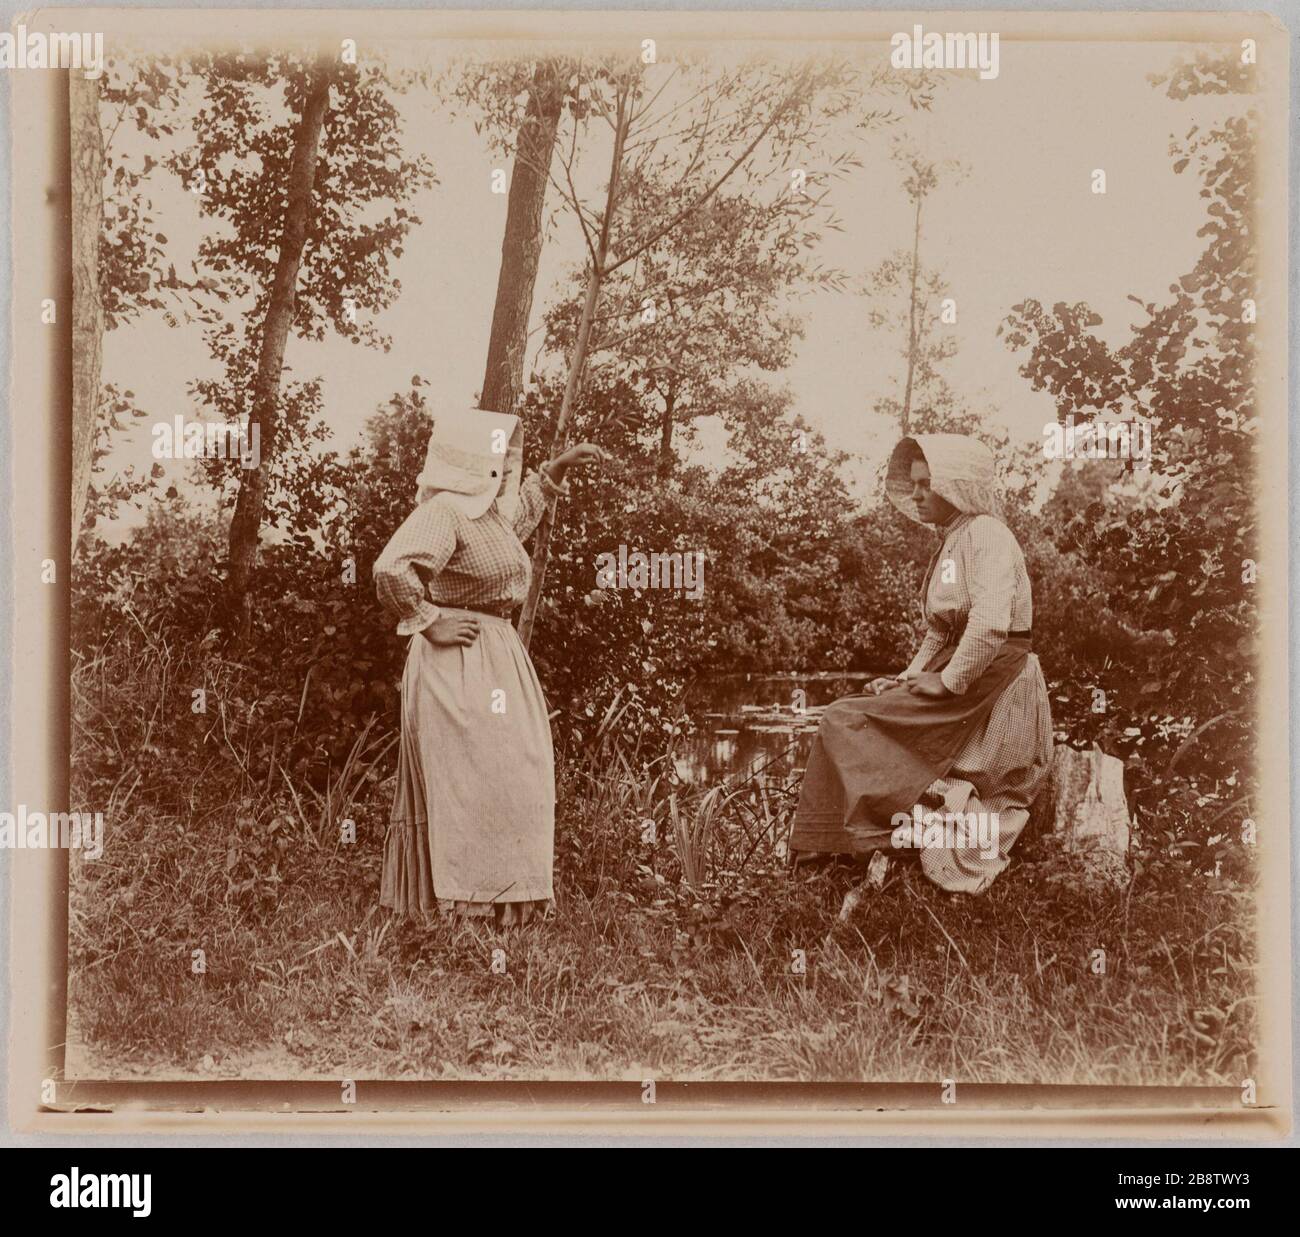 Two women with a seat on a stump near a body of water, Amiens. Deux femmes dont l'une assise sur une souche près d'une étendue d'eau, Amiens. Photographie de Lagrange. Paris, musée Carnavalet. Stock Photo